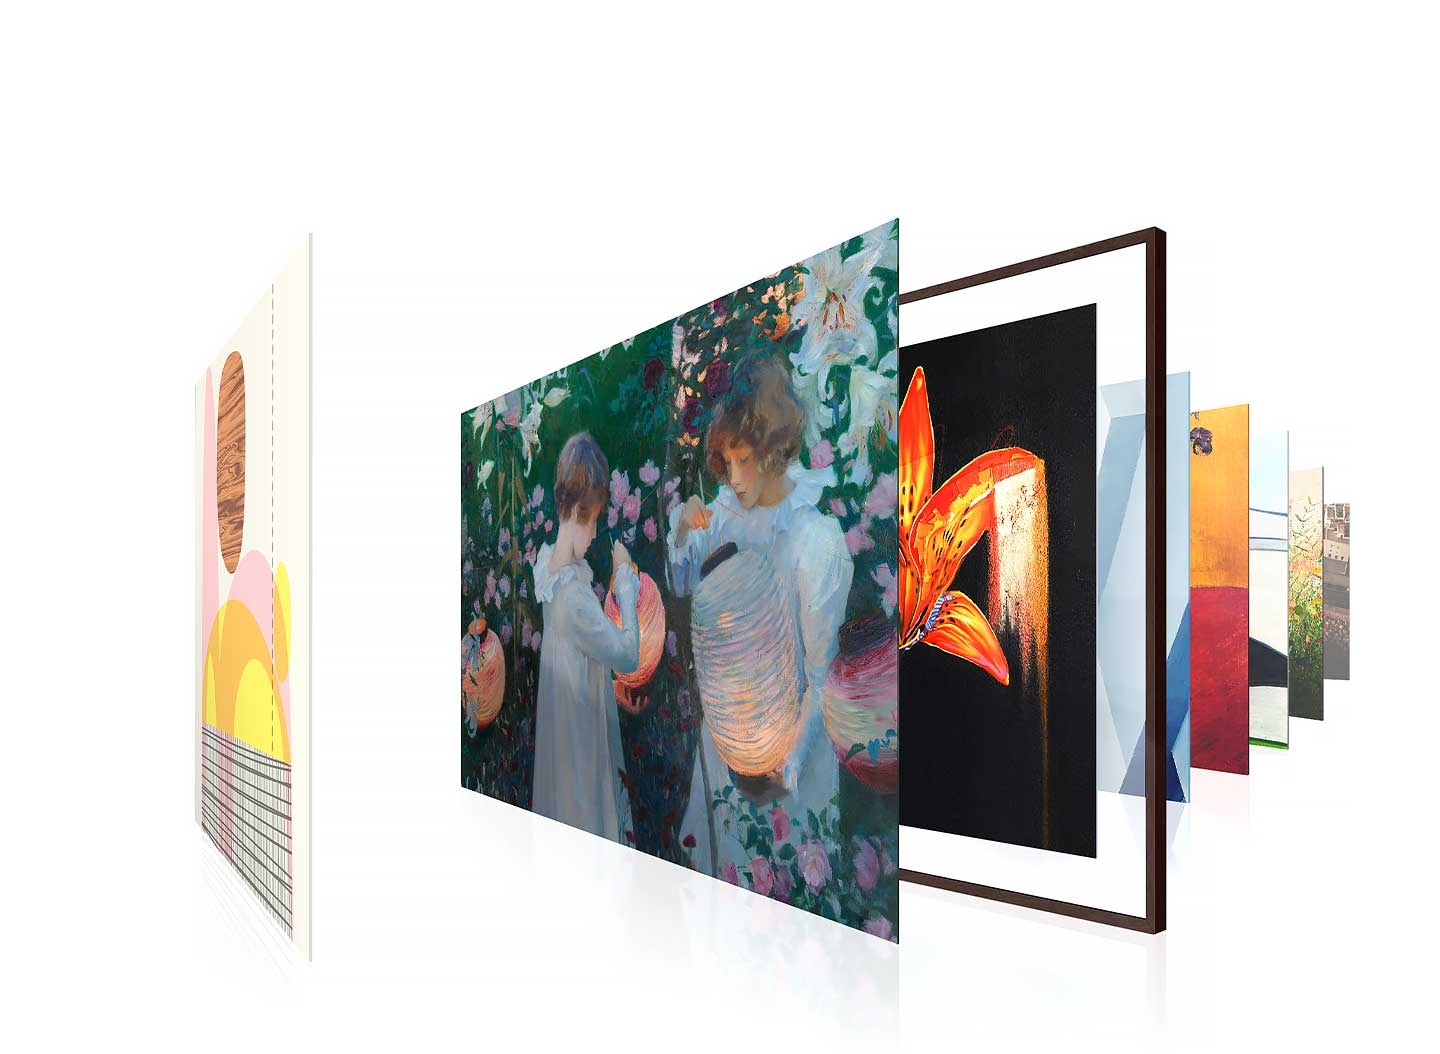 Verschiedene renommierte Kunstwerke werden im Rahmenfernseher vorgestellt, um die Bildqualität zu demonstrieren